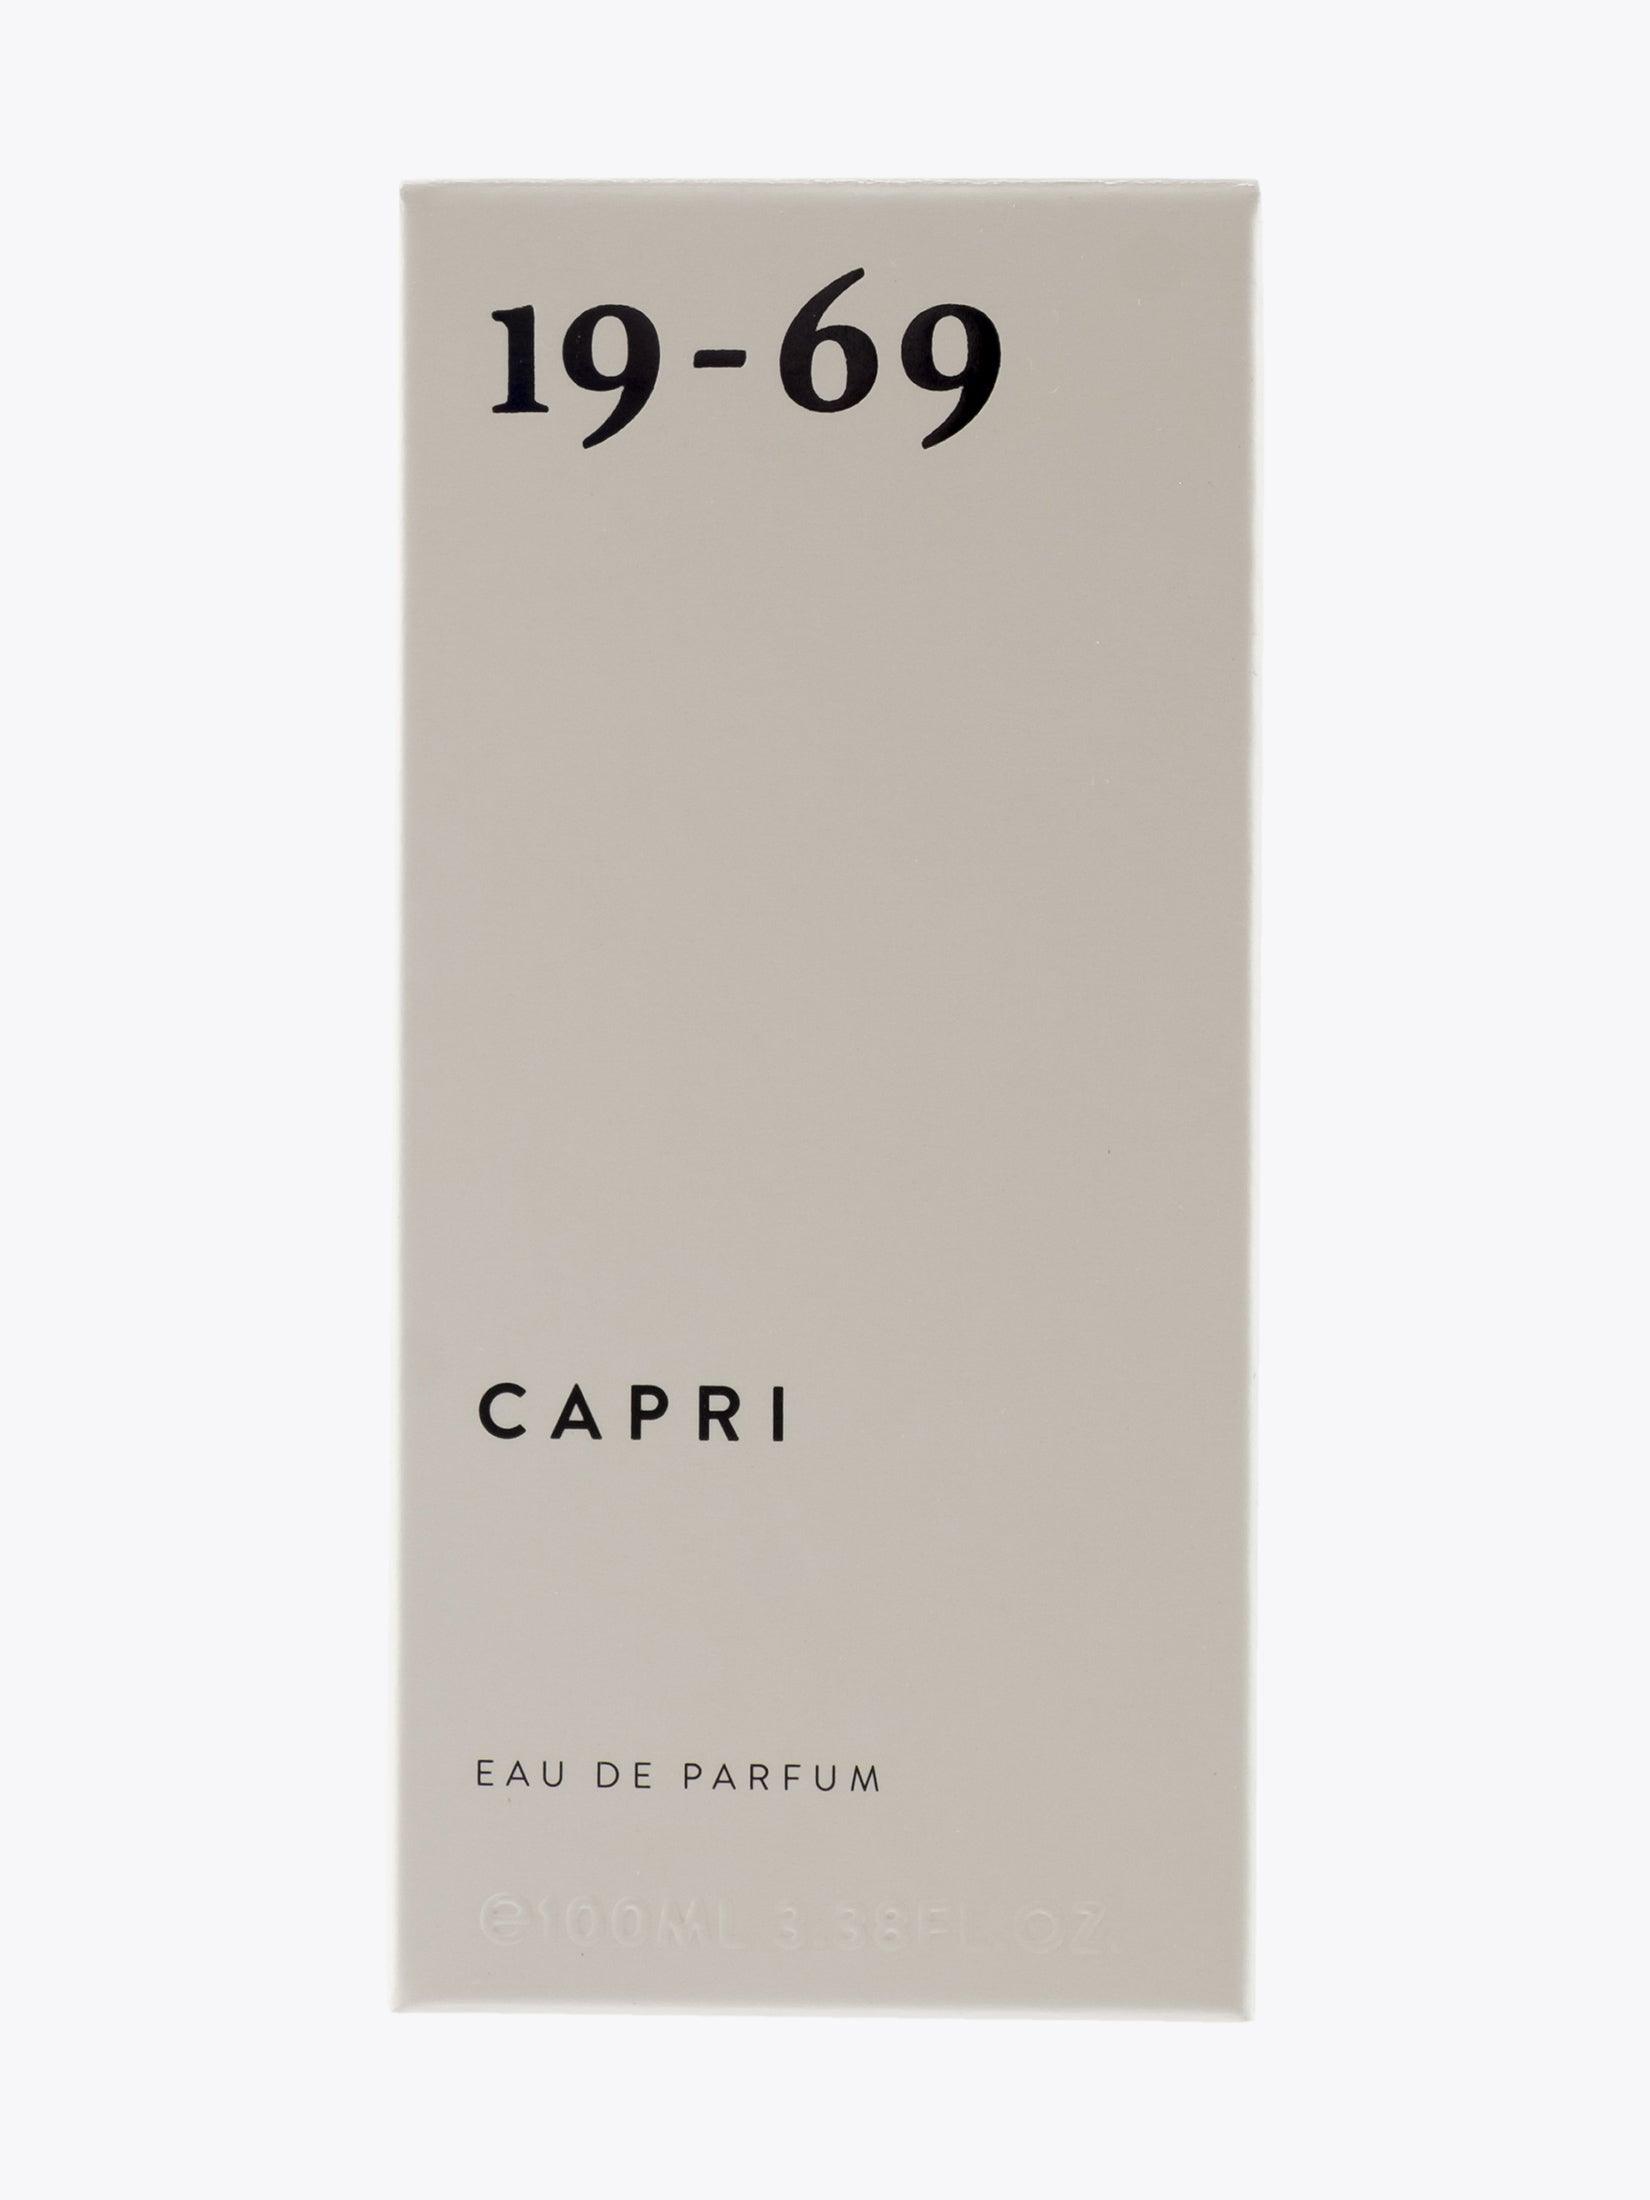 19-69 Capri Eau de Parfum 100ml